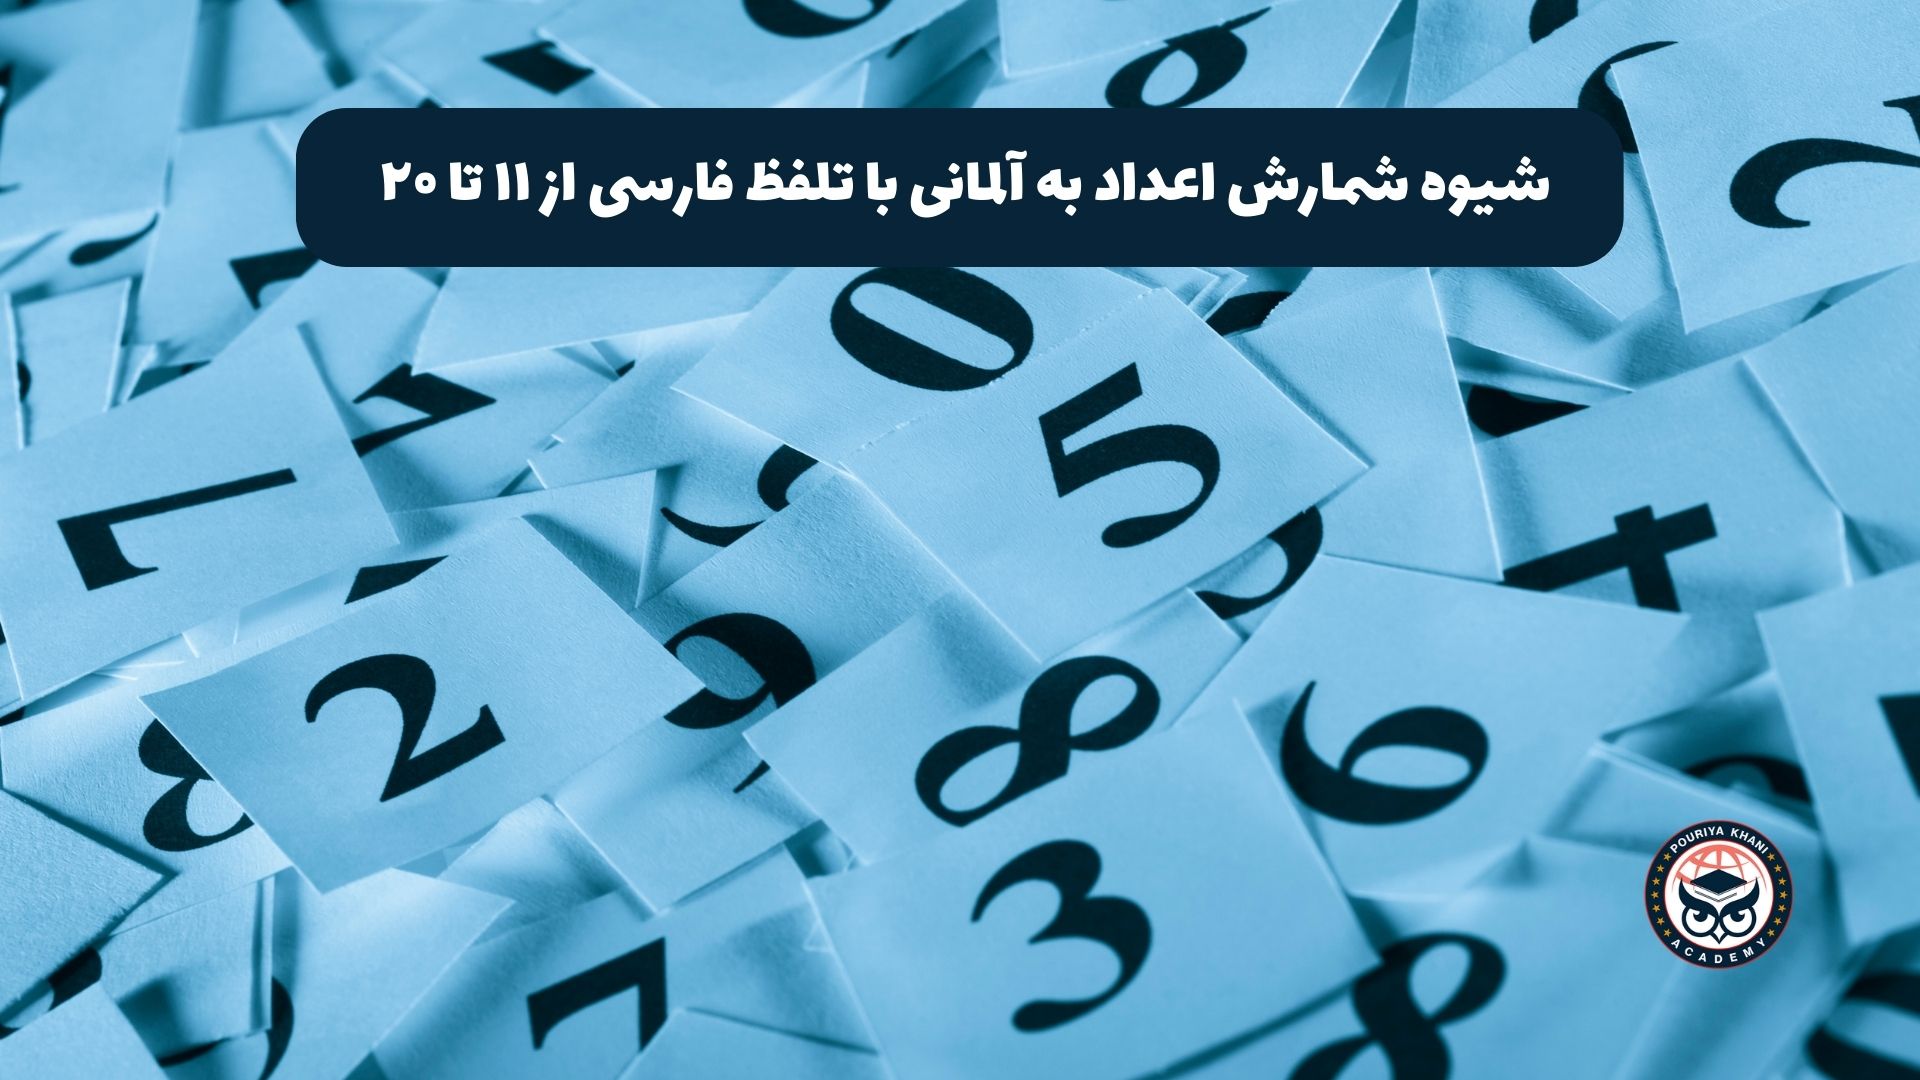 شیوه شمارش اعداد به آلمانی با تلفظ فارسی از ۱۱ تا ۲۰